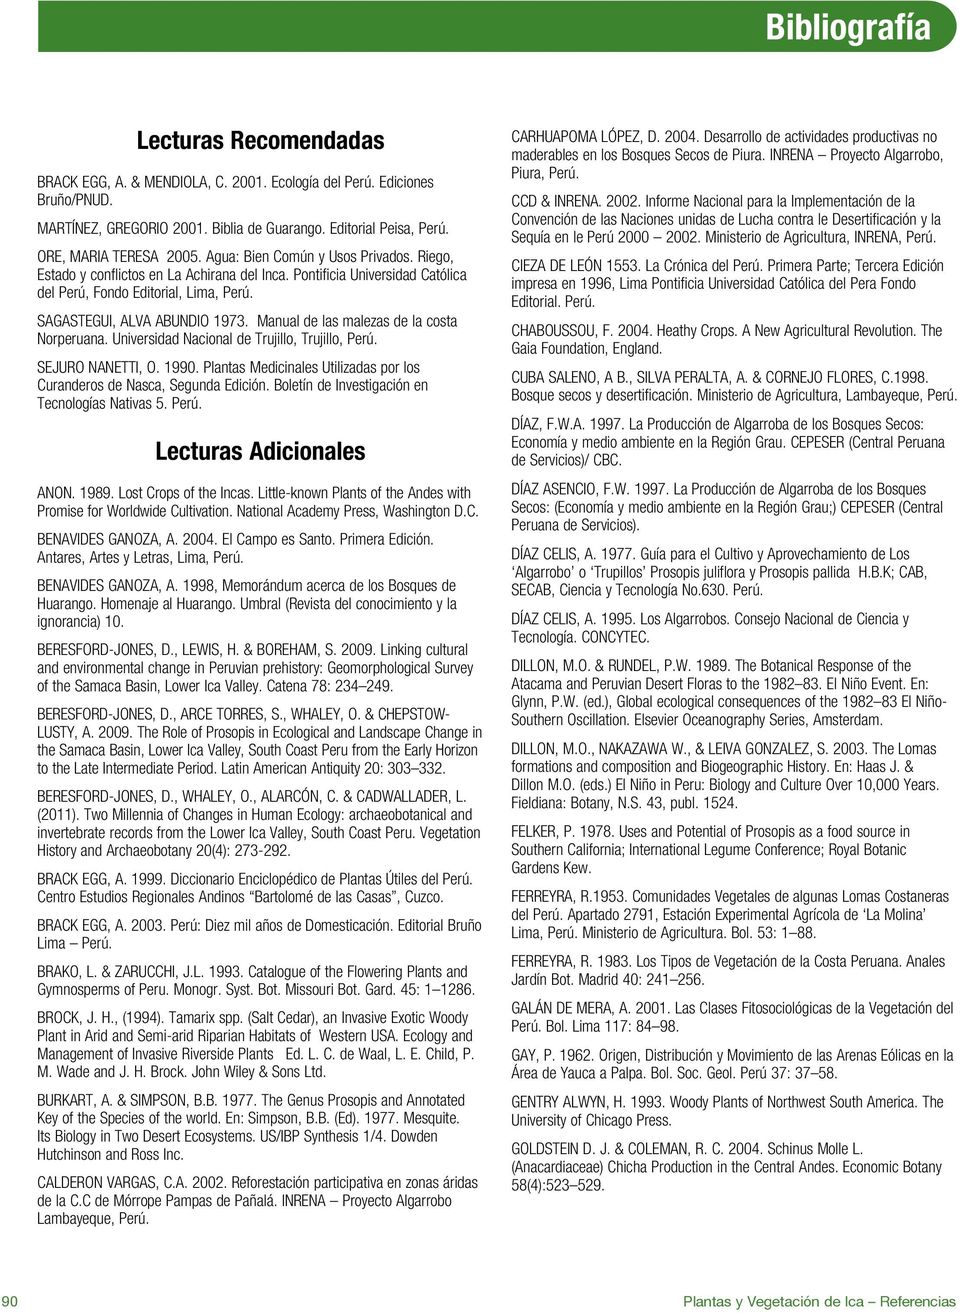 SAGASTEGUI, ALVA ABUNDIO 1973. Manual de las malezas de la costa Norperuana. Universidad Nacional de Trujillo, Trujillo, Perú. SEJURO NANETTI, O. 1990.